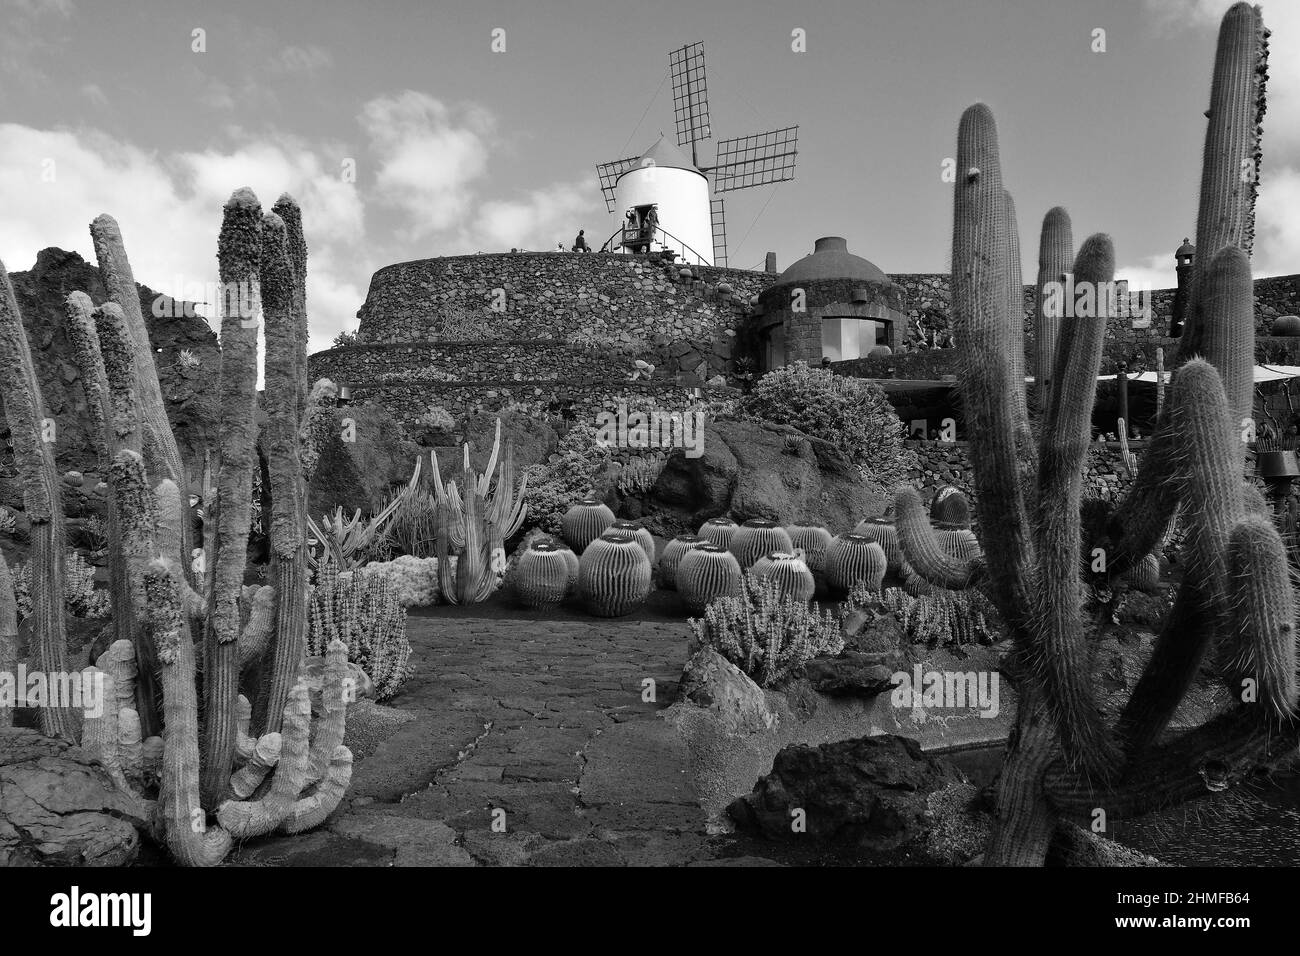 Black and white photograph, Jardin de Cactus, cactus garden in Guatiza, Lanzarote, Spain Stock Photo